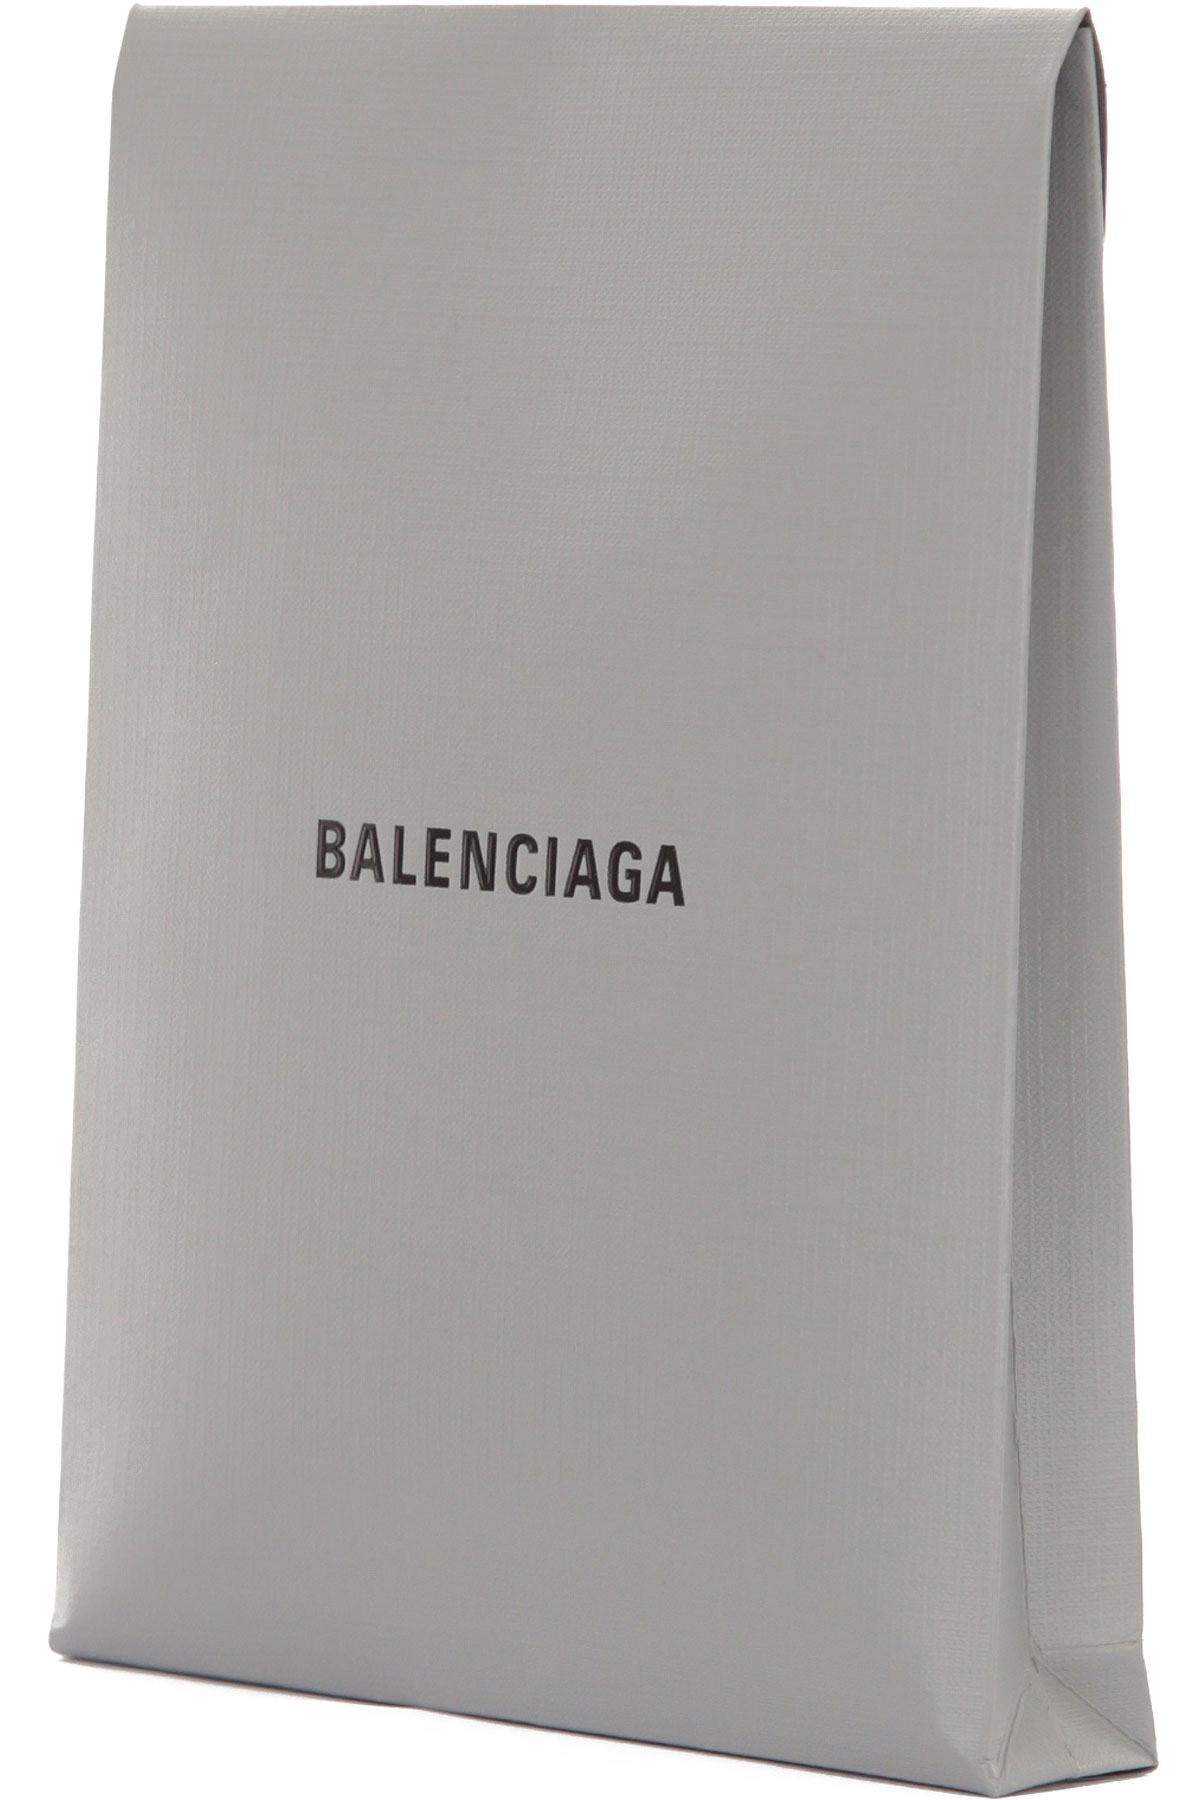 Balenciaga, Style code: 657391-4a8b8-9000